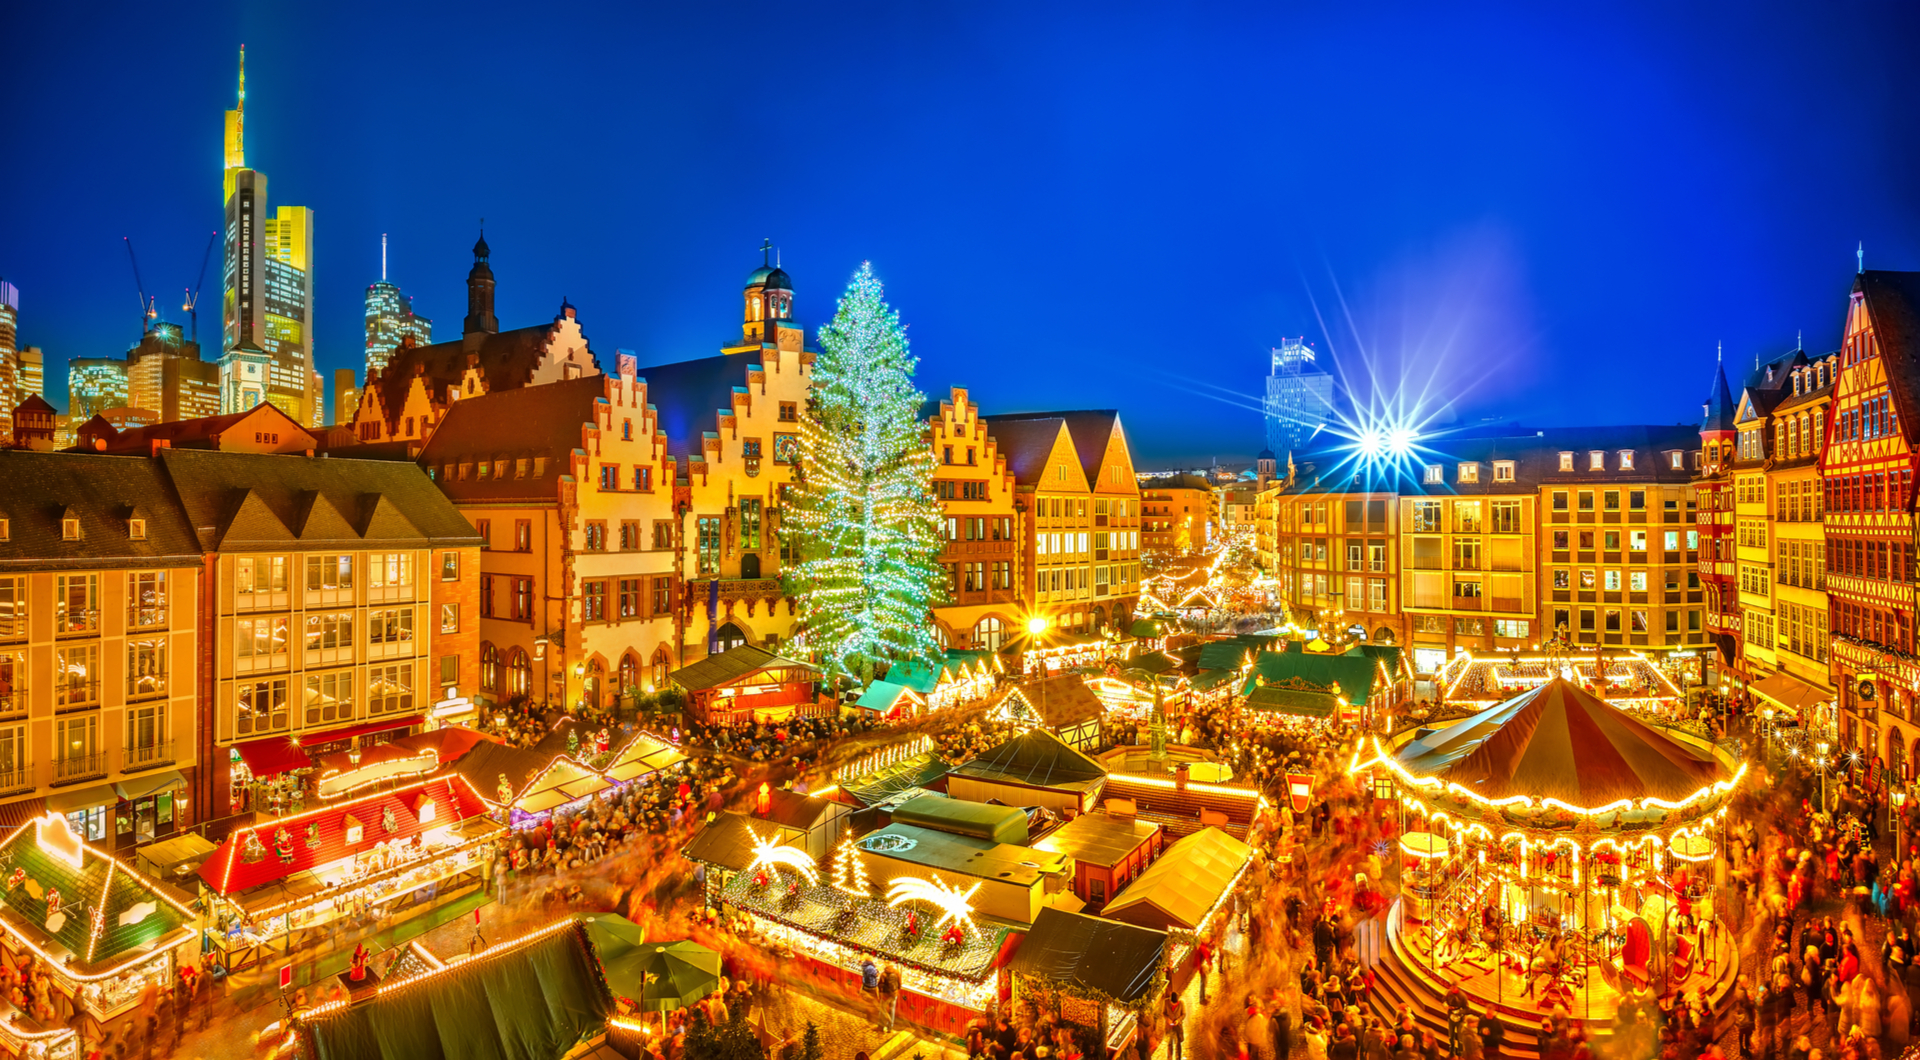 Noël en Europe : menus de fin d'année et repas traditionnels 